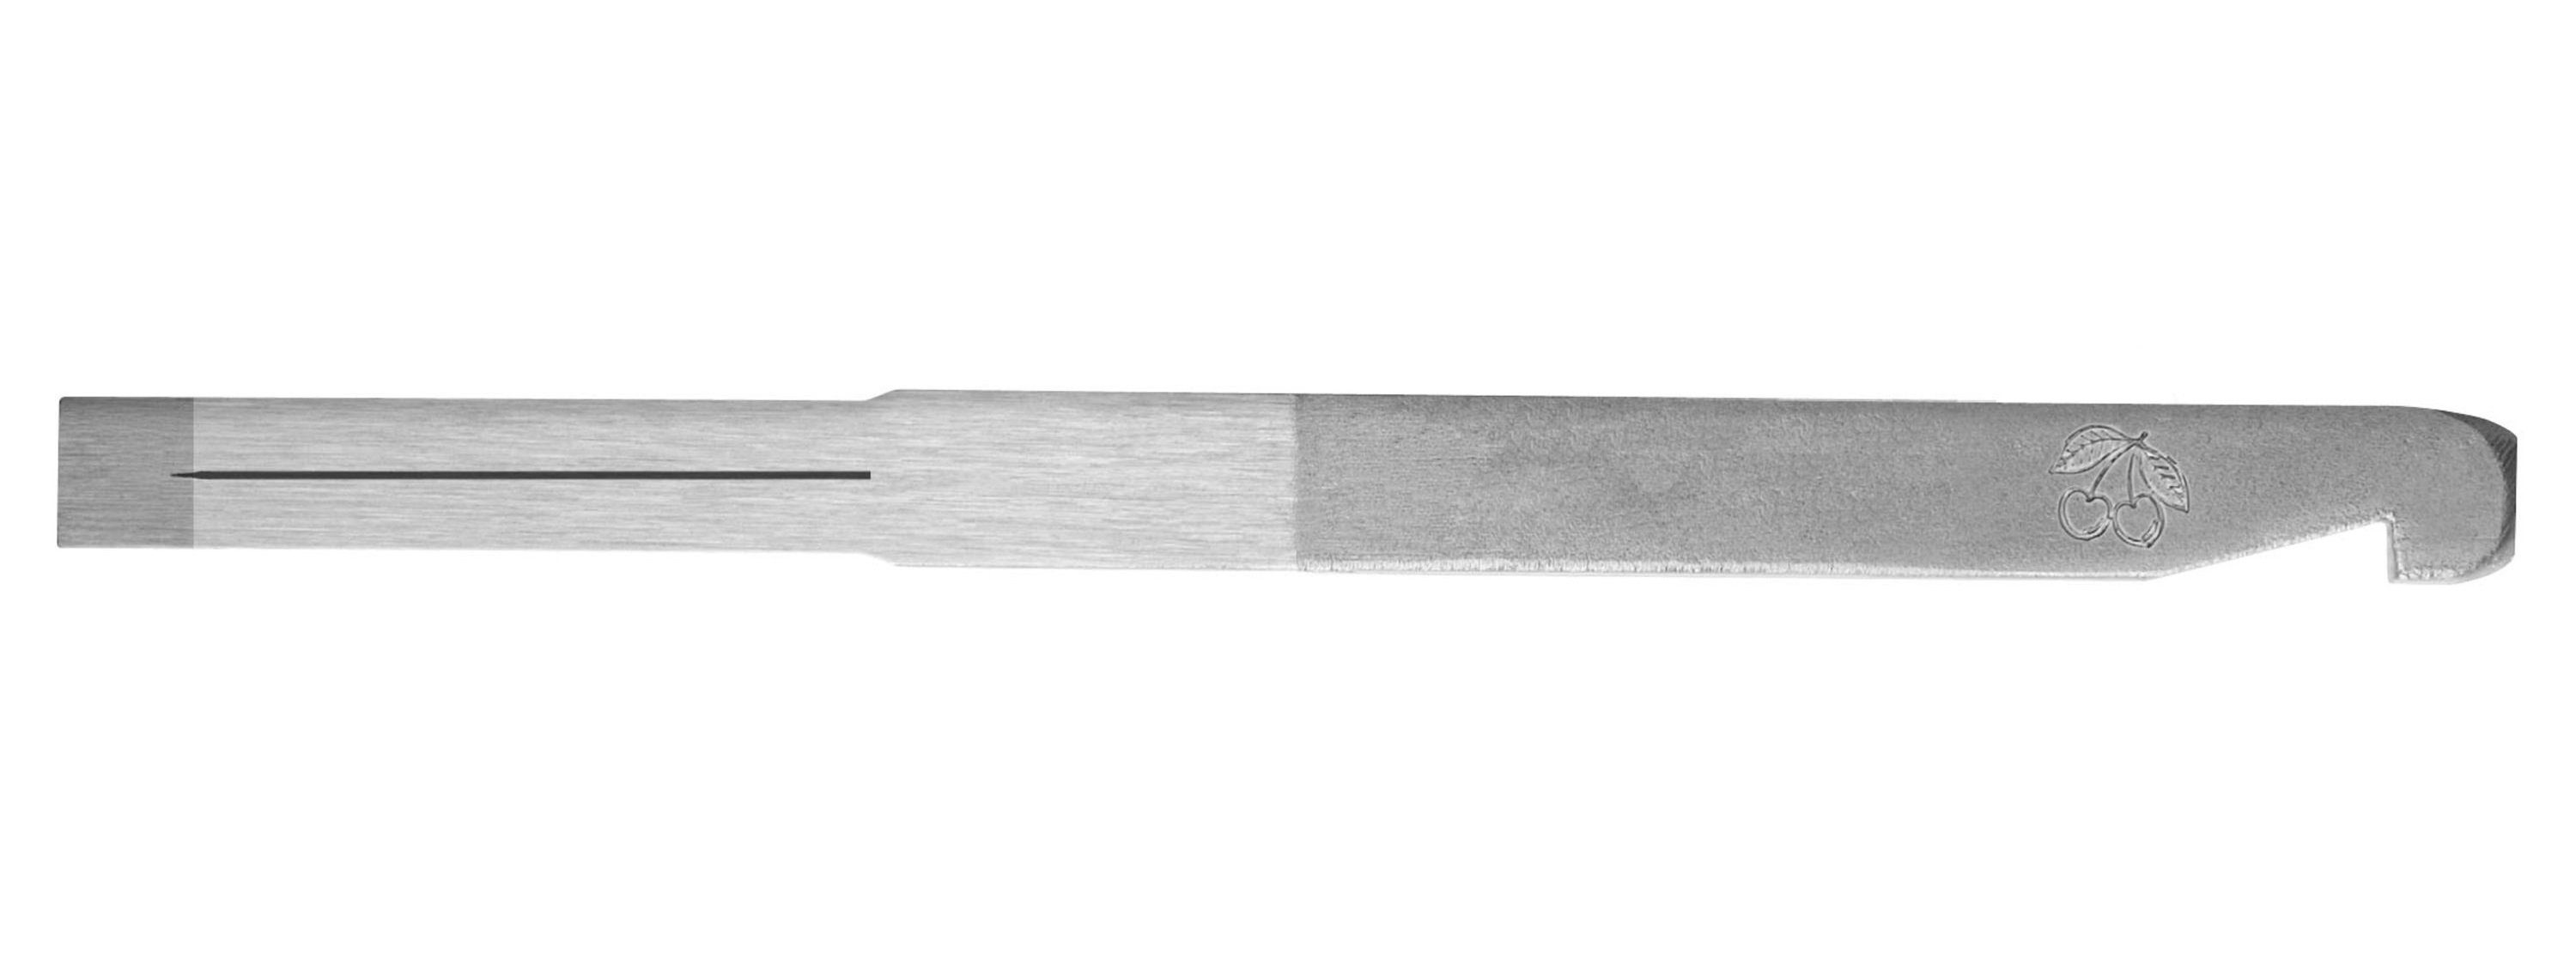 Haken mit 3mm Kirschen - Nuthobeleisen Hobelmesser KIRSCHEN